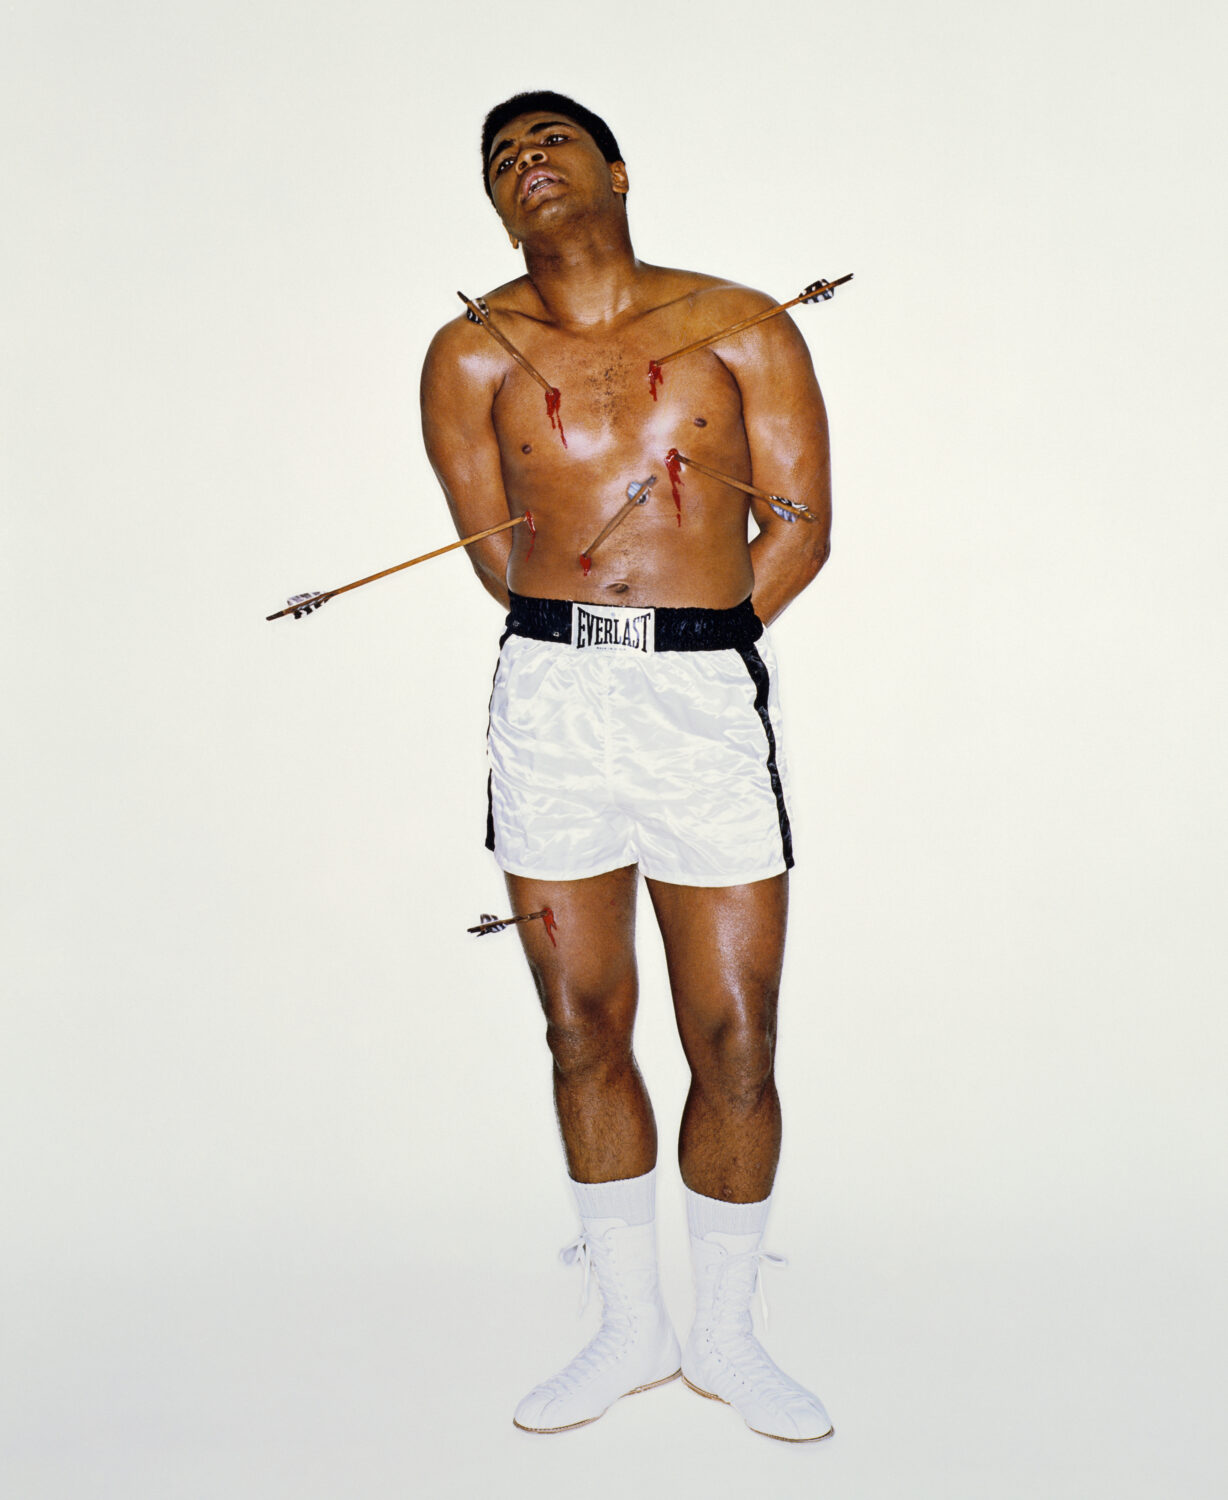 Carl Fischer: Muhammad Ali